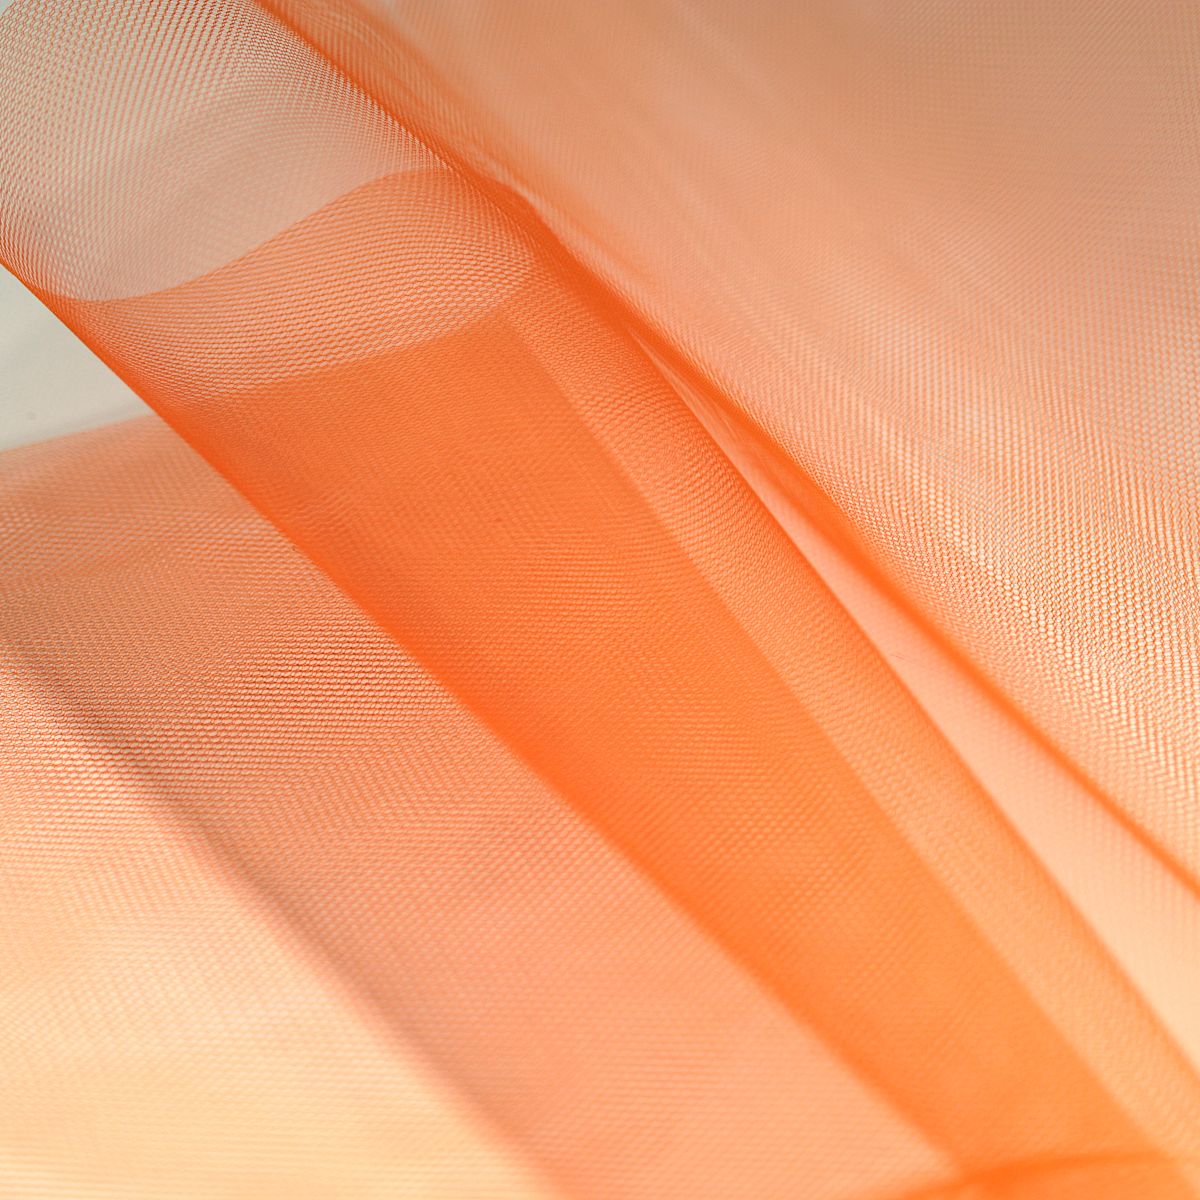 Tüllstoff Meterware 140cm breit für Gardine Vorhang Store Hochzeit Orange